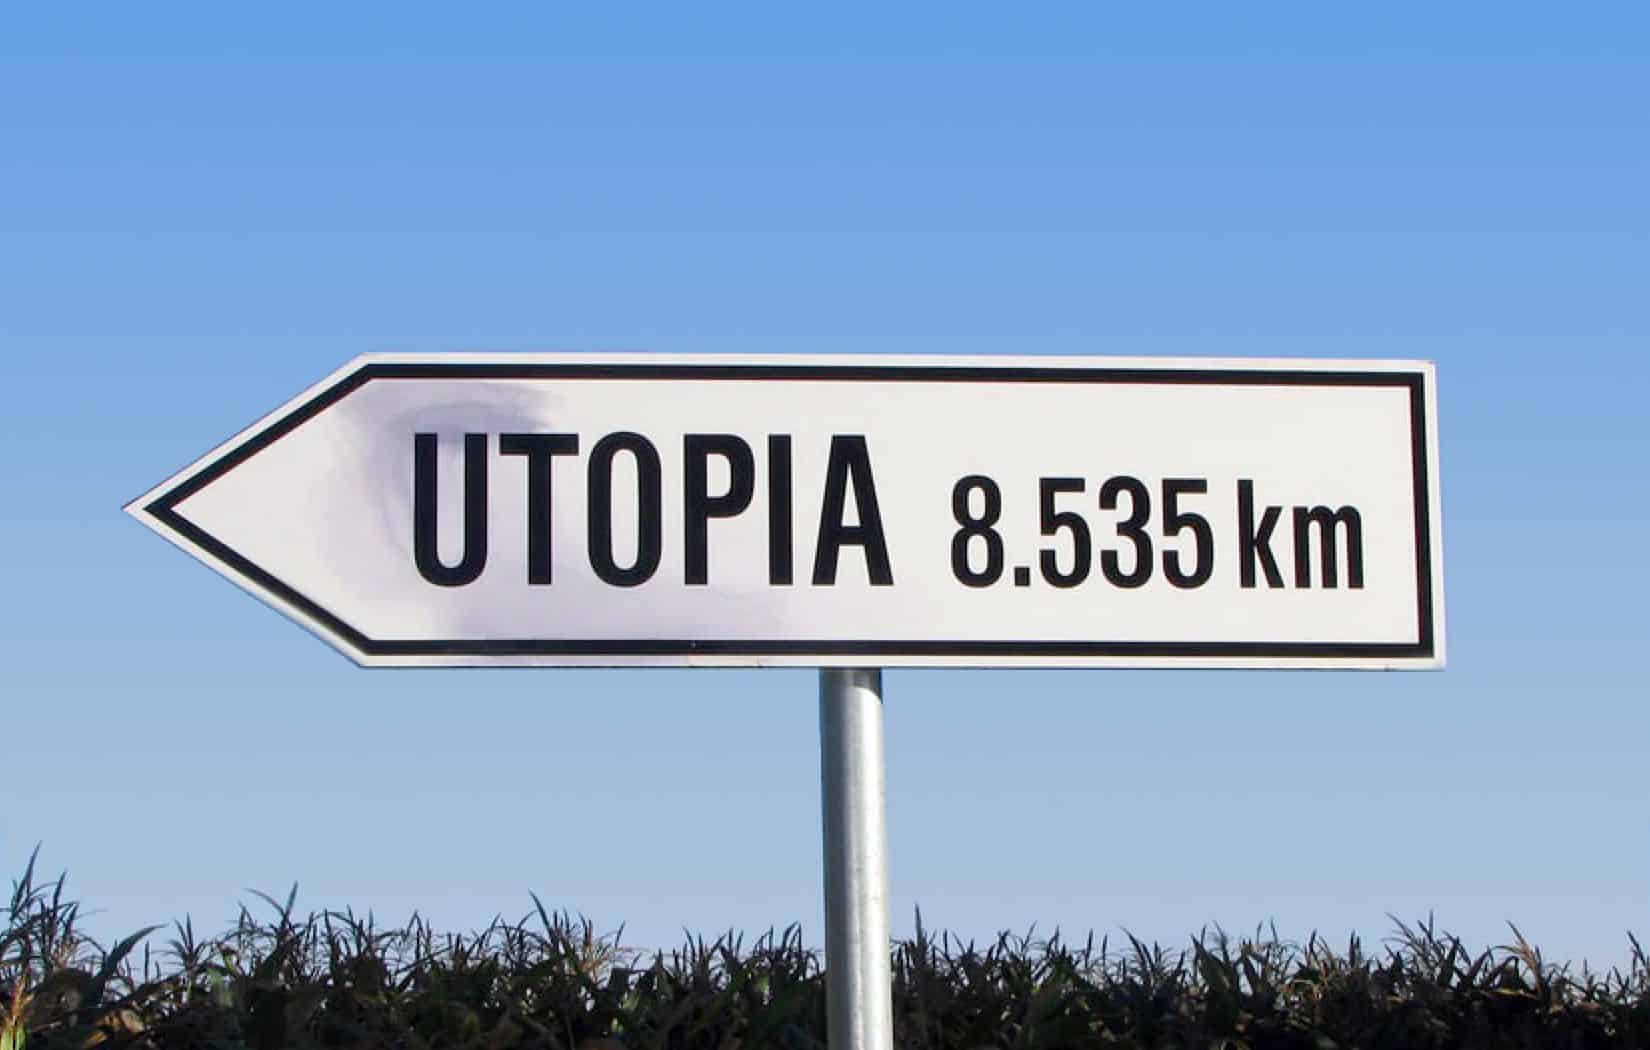 utopia definicion